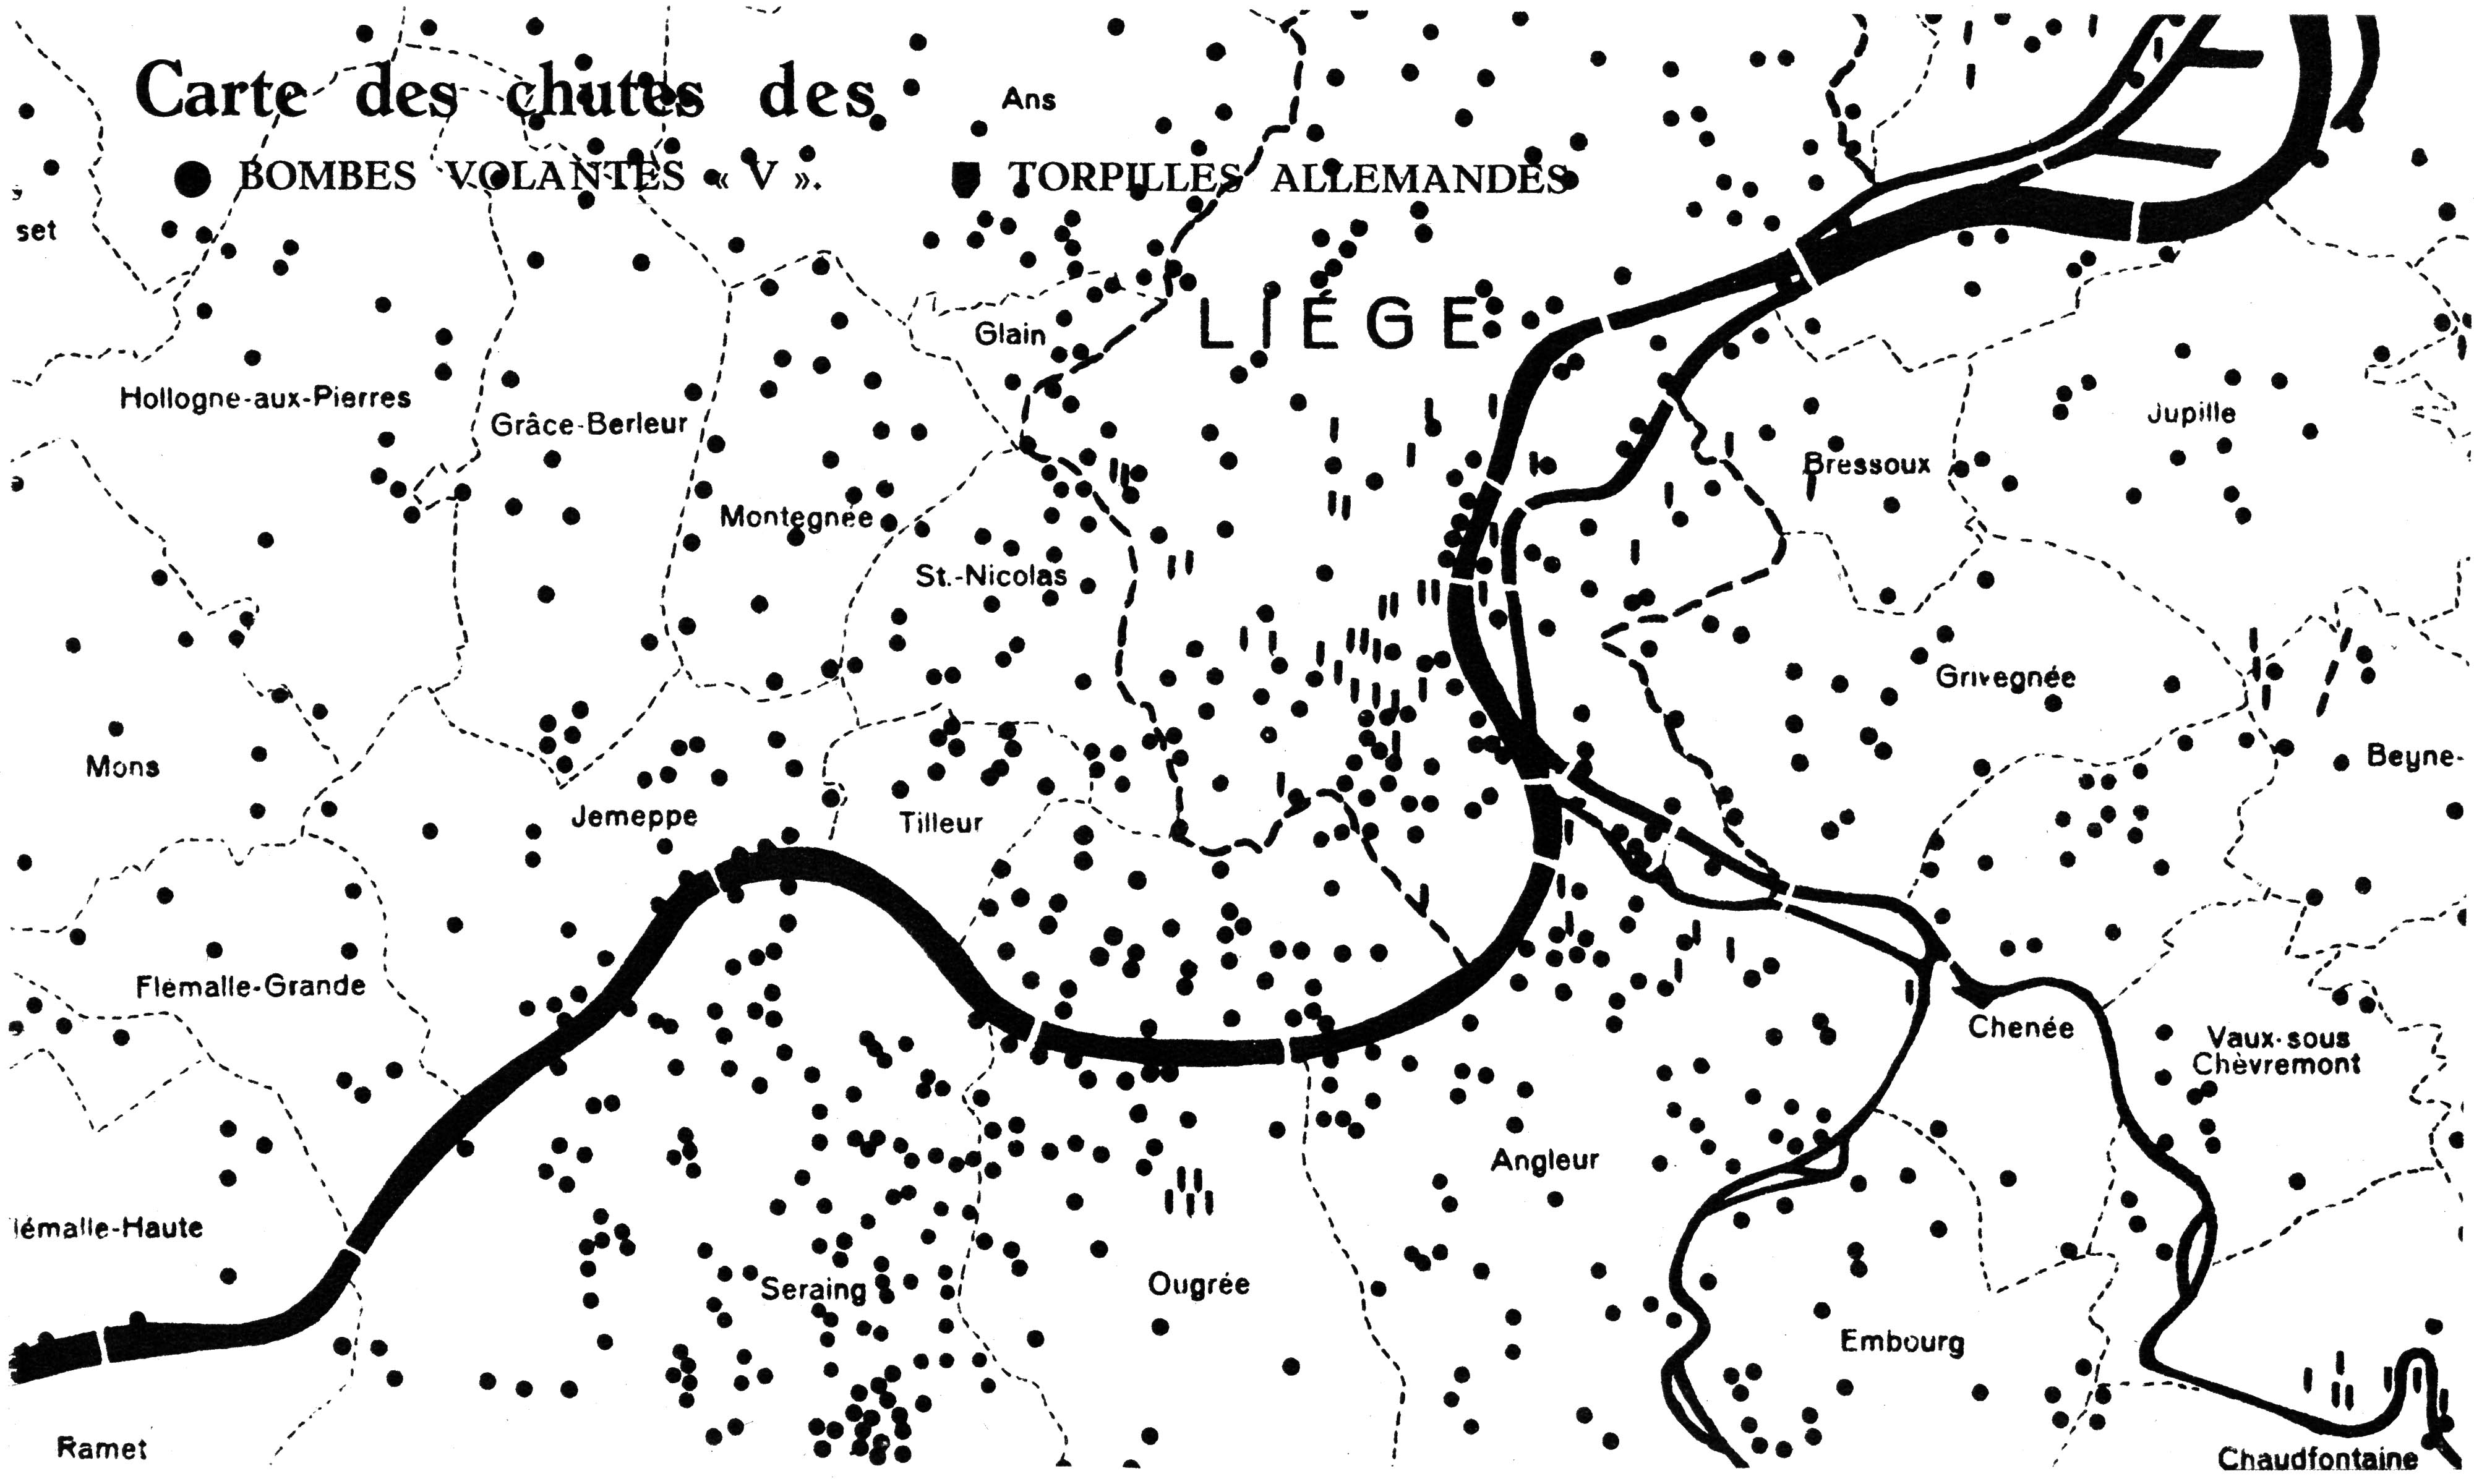 Carte des chutes des bombes volantes V et torpilles allemandes à Liège